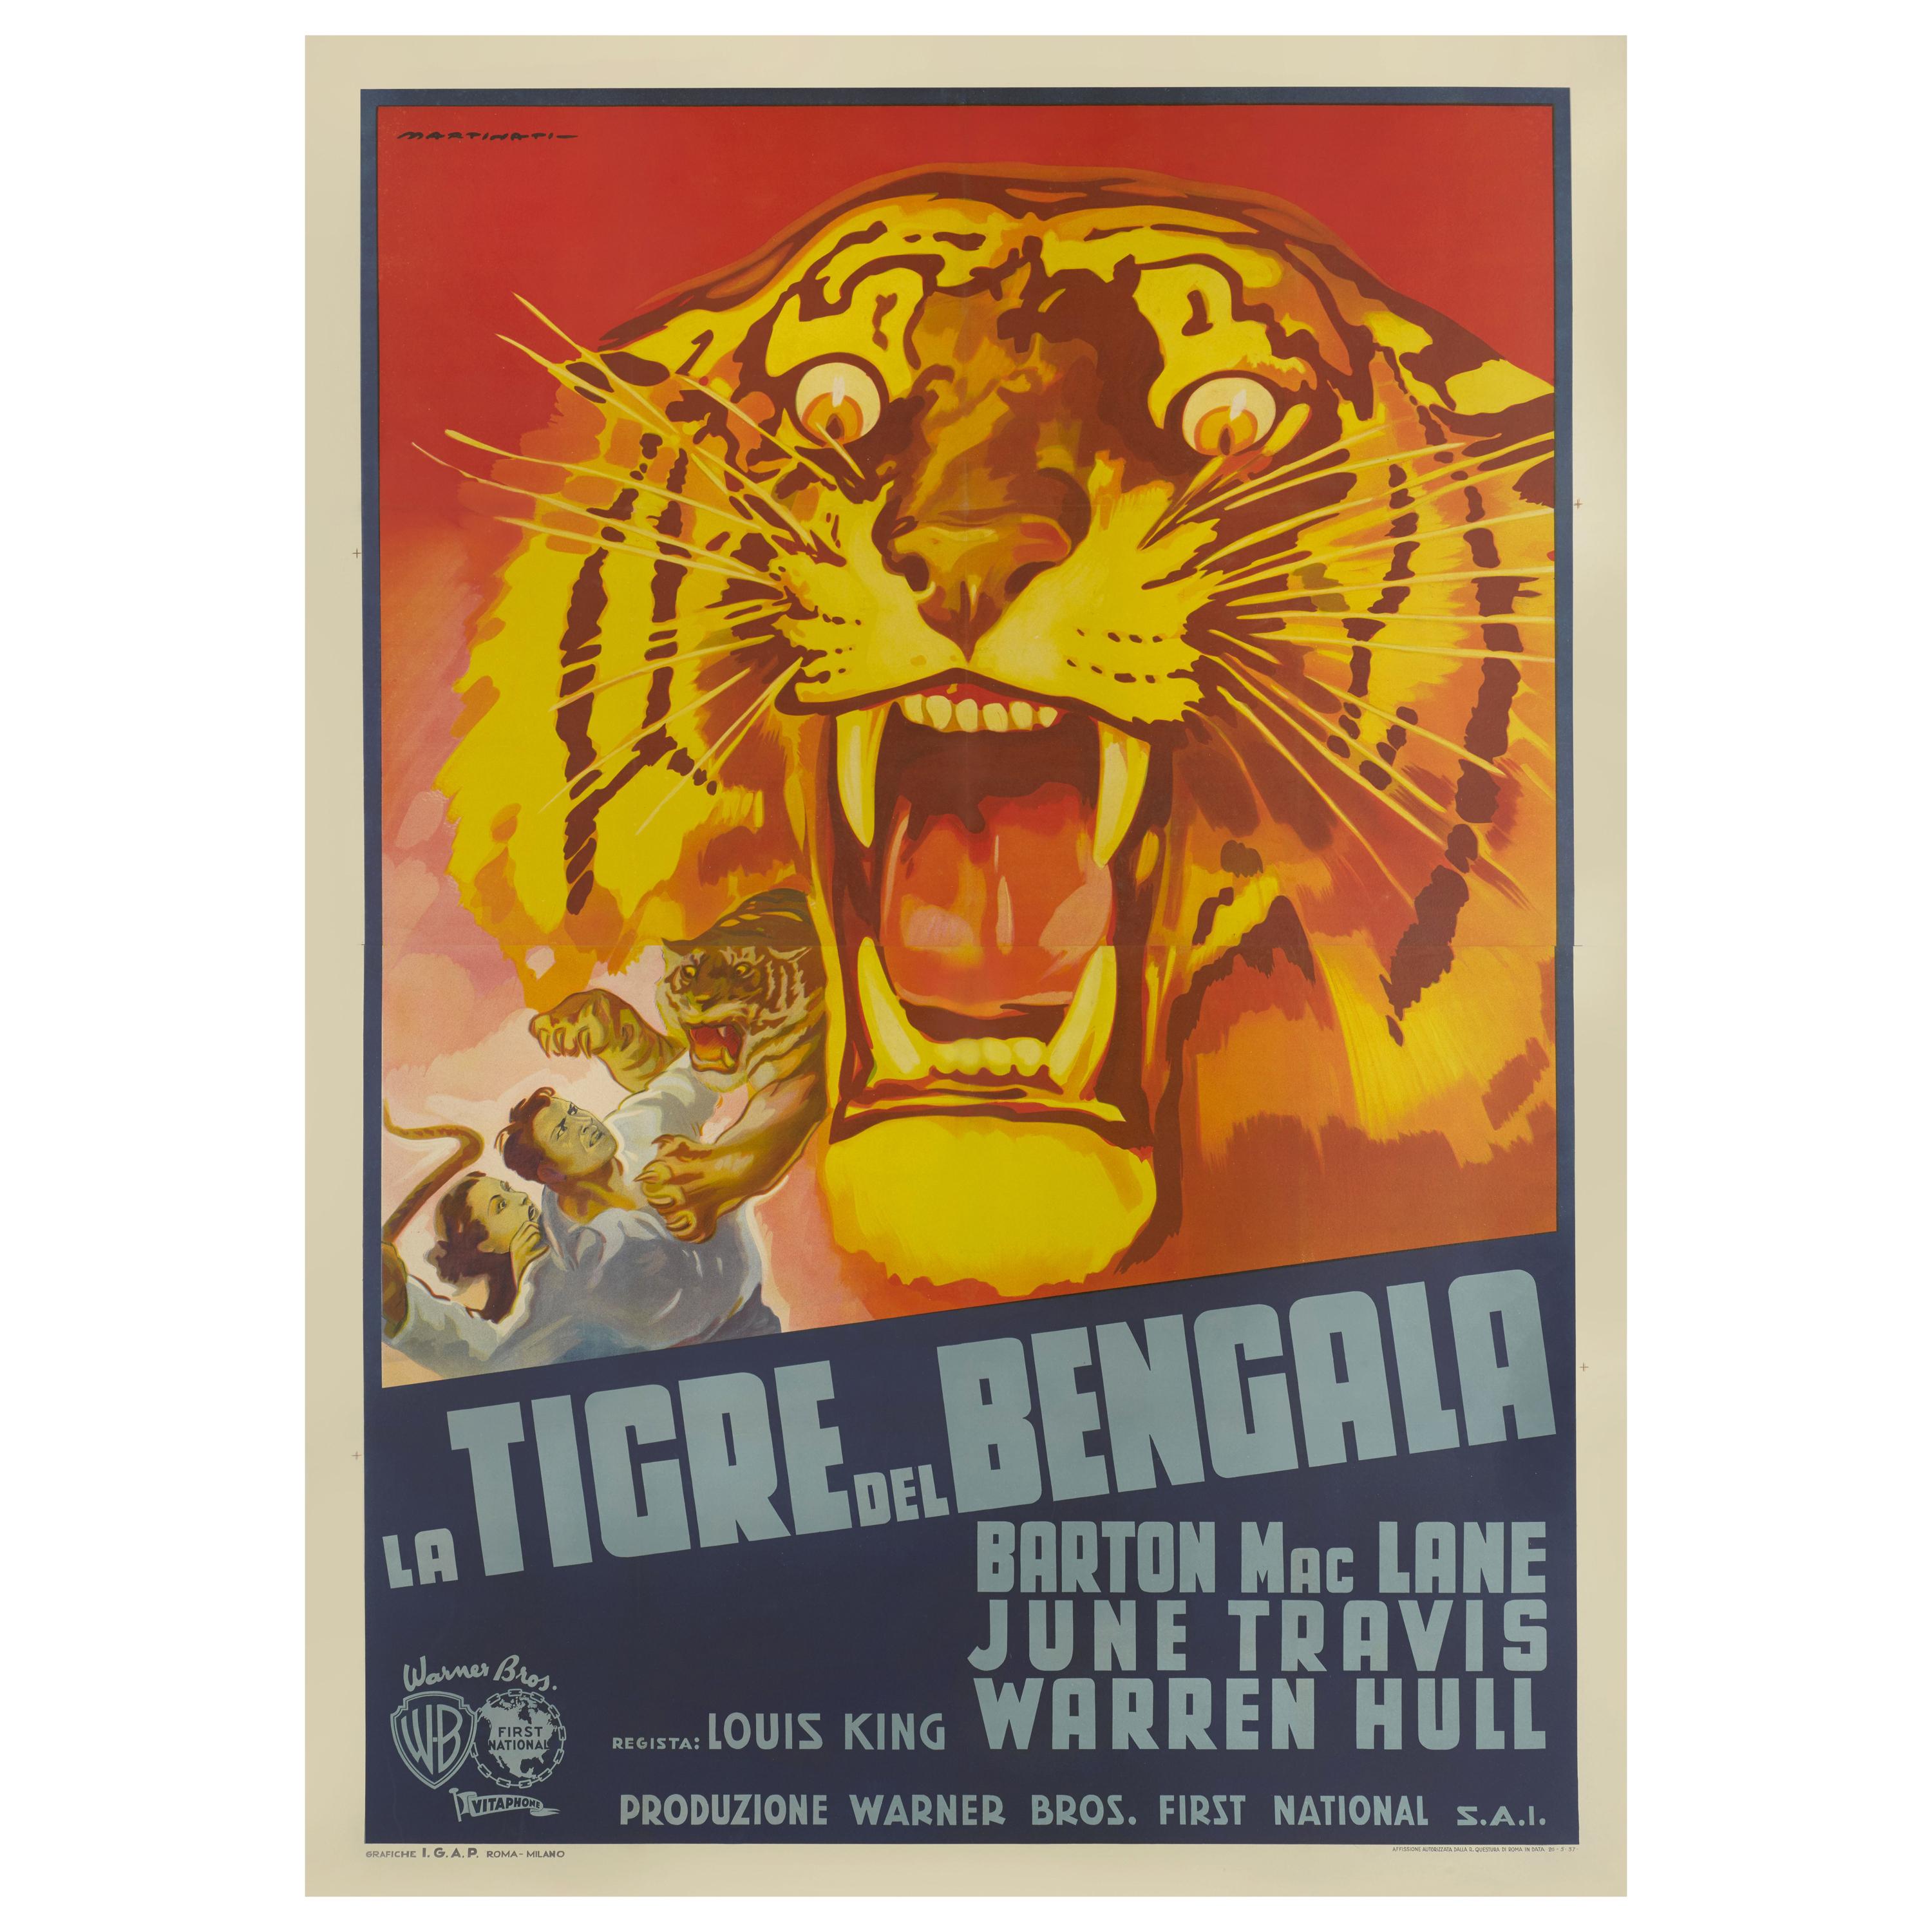 Bengal Tiger / La Tigre del Bengala